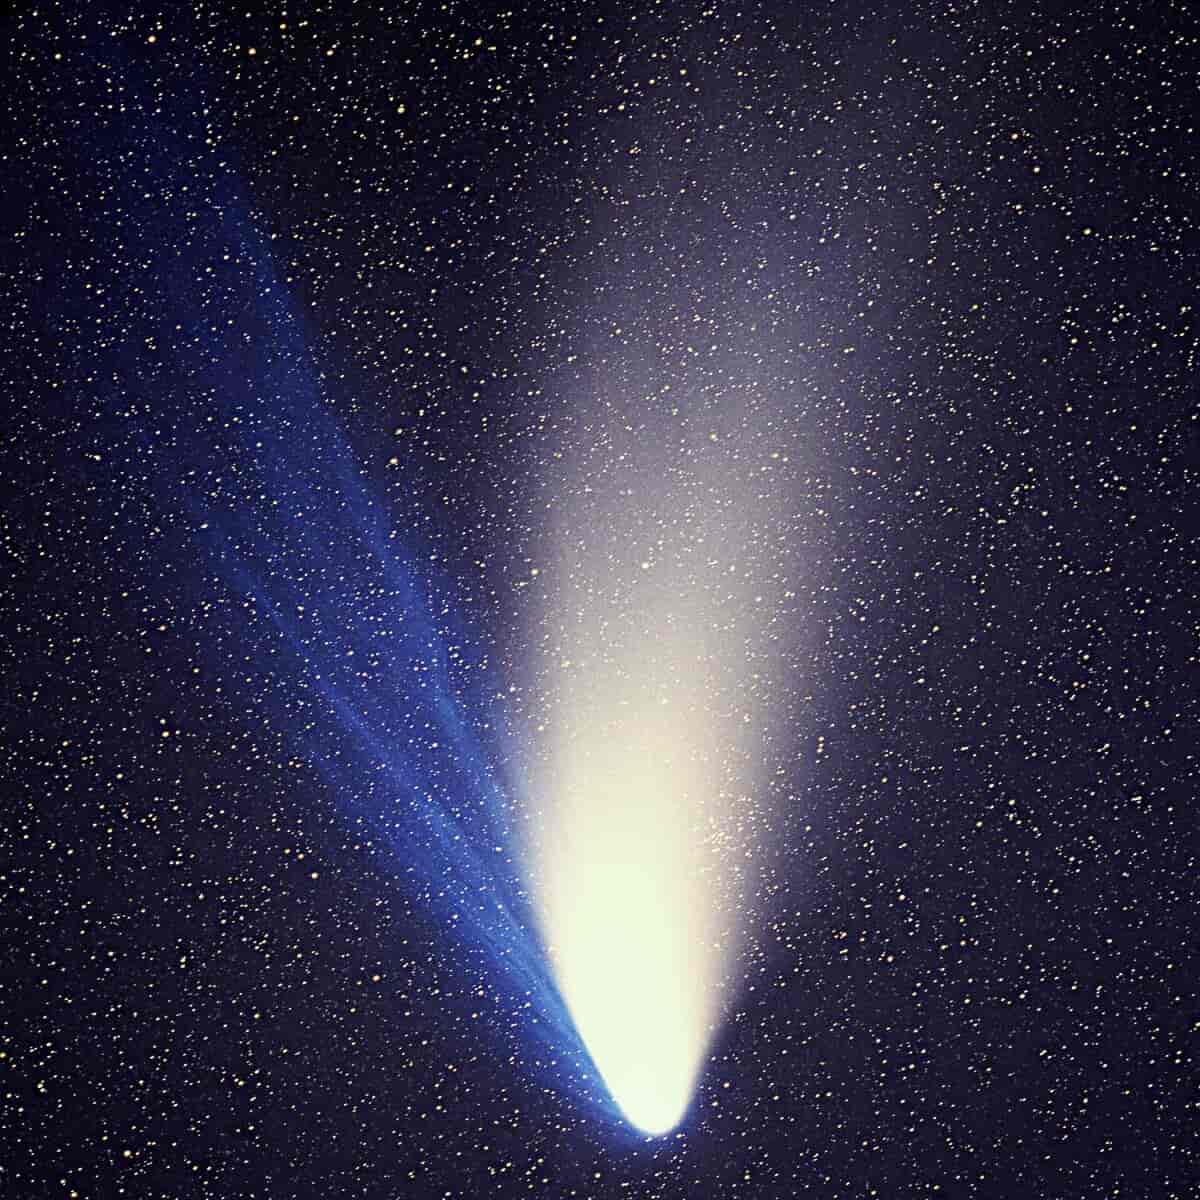 Kometen mot en himmel full av stjerner. Den har to haler, den til venstre er blå, den til høyre er hvit.